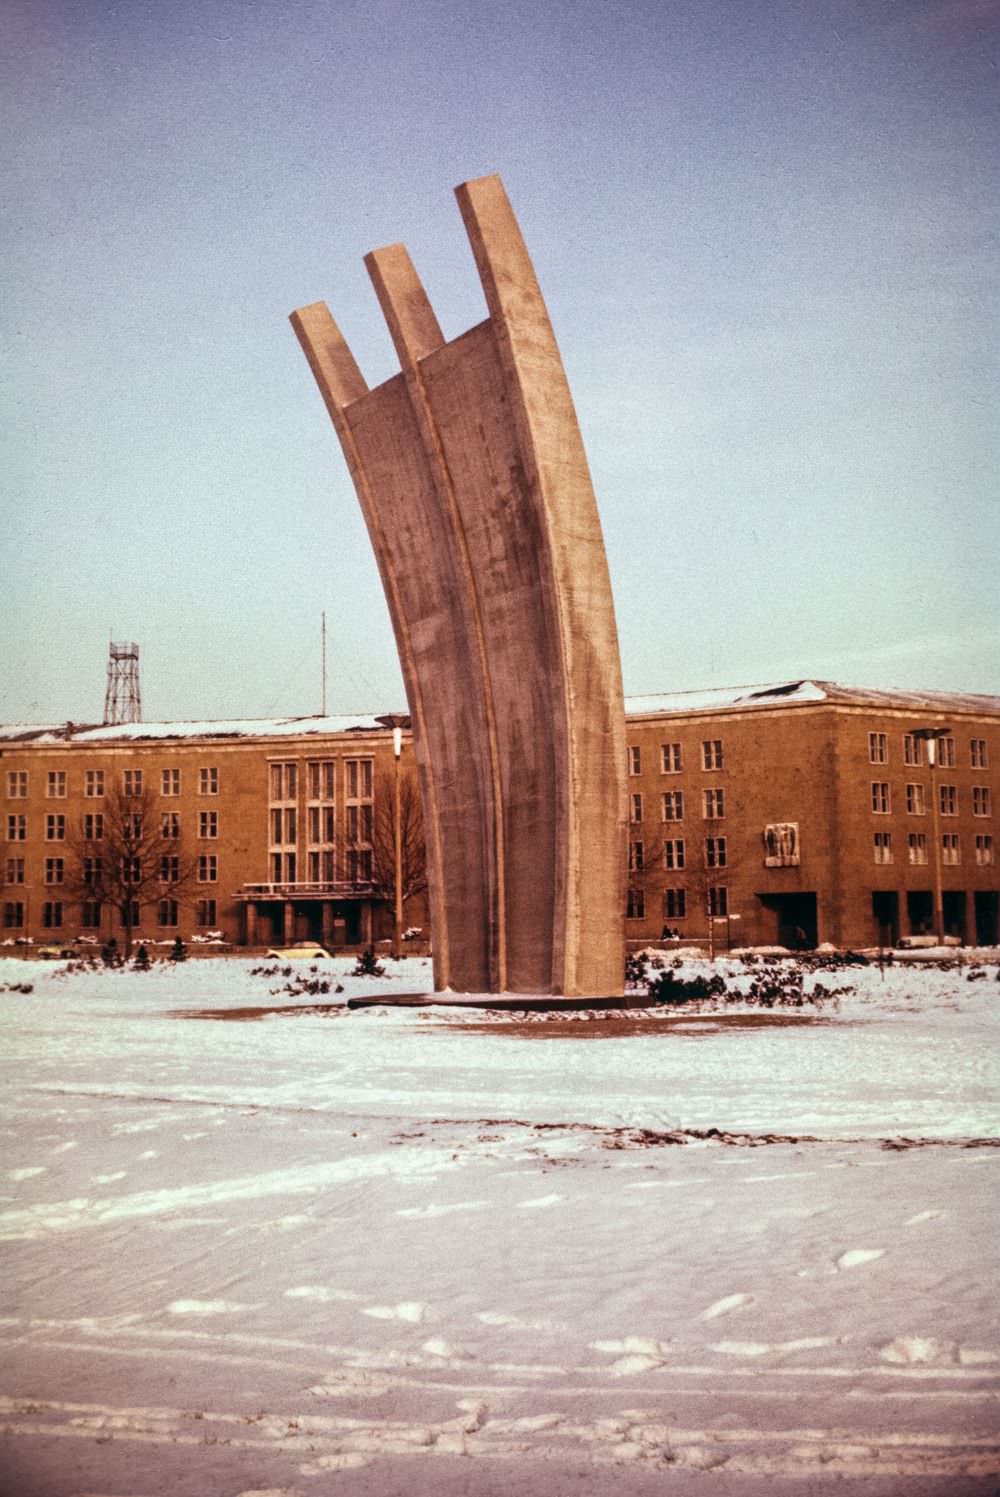 The 'hunger rake' memorial at Templehof Airport. The memorial commemorates the Berlin Airlift of 1948